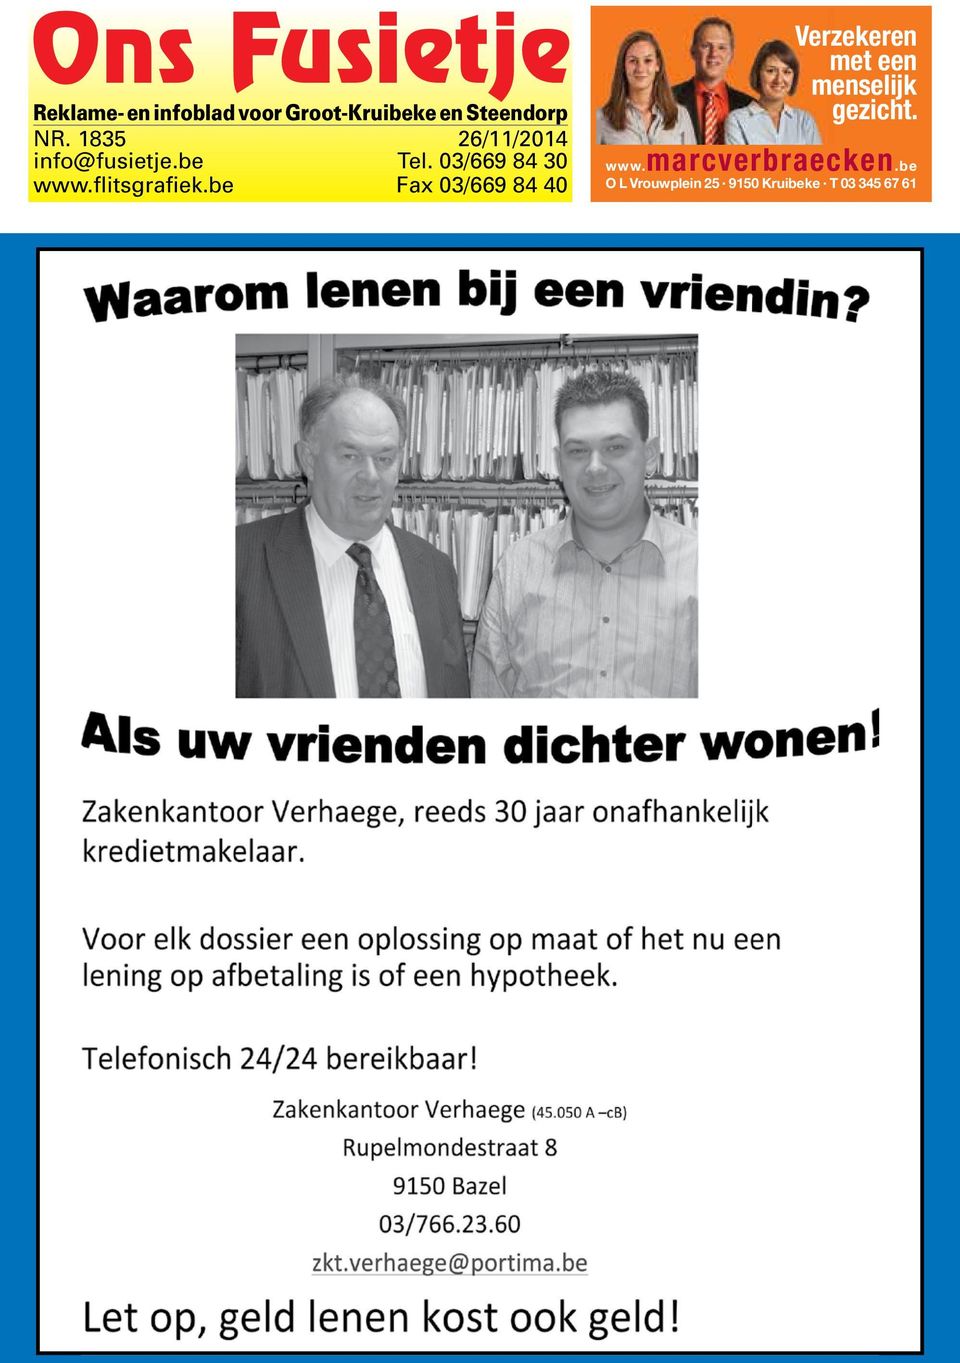 be Fax 03/669 84 40 Verzekeren met een menselijk gezicht. www.marcverbraecken.